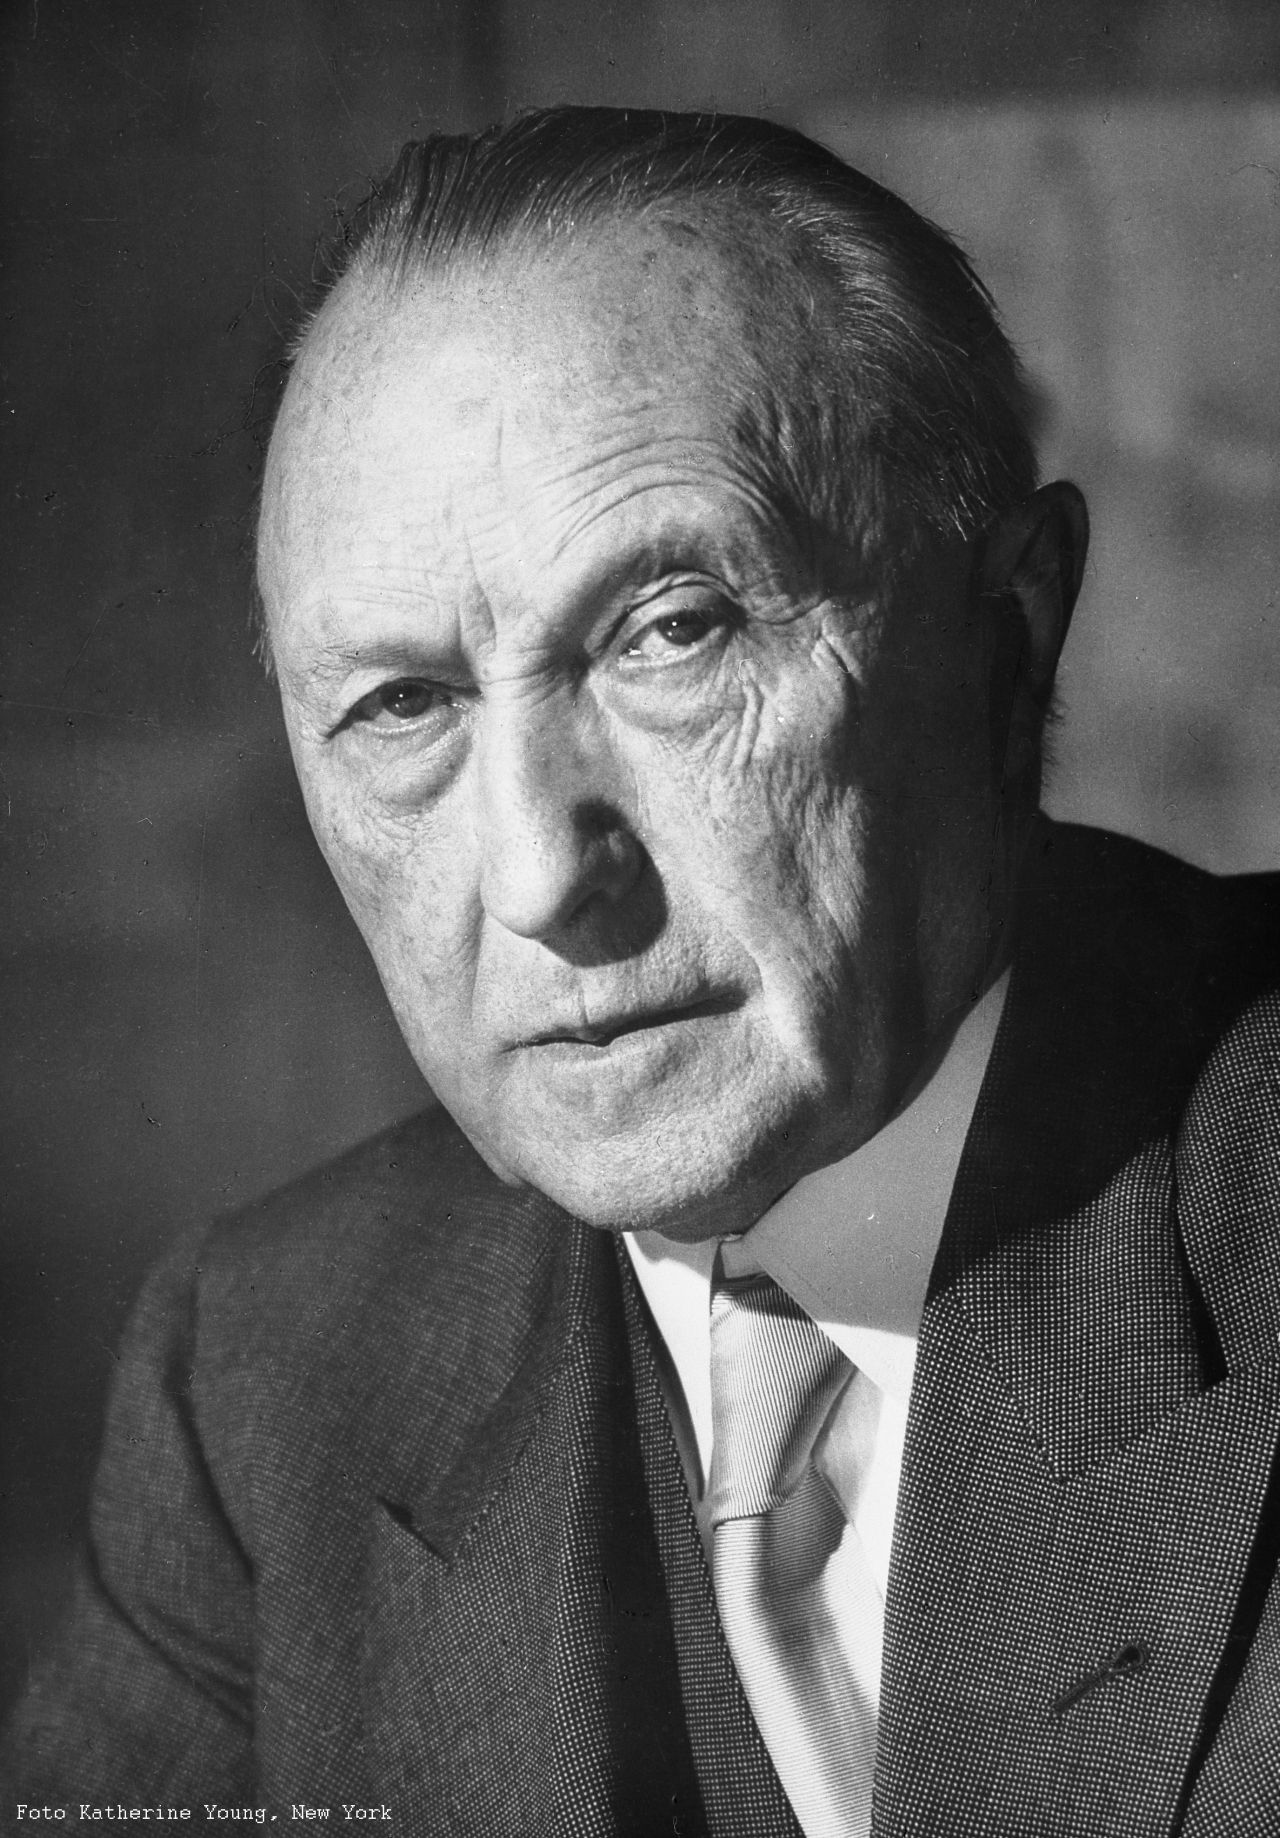 Porträt von Bundeskanzler Dr. Konrad Adenauer, 1952.